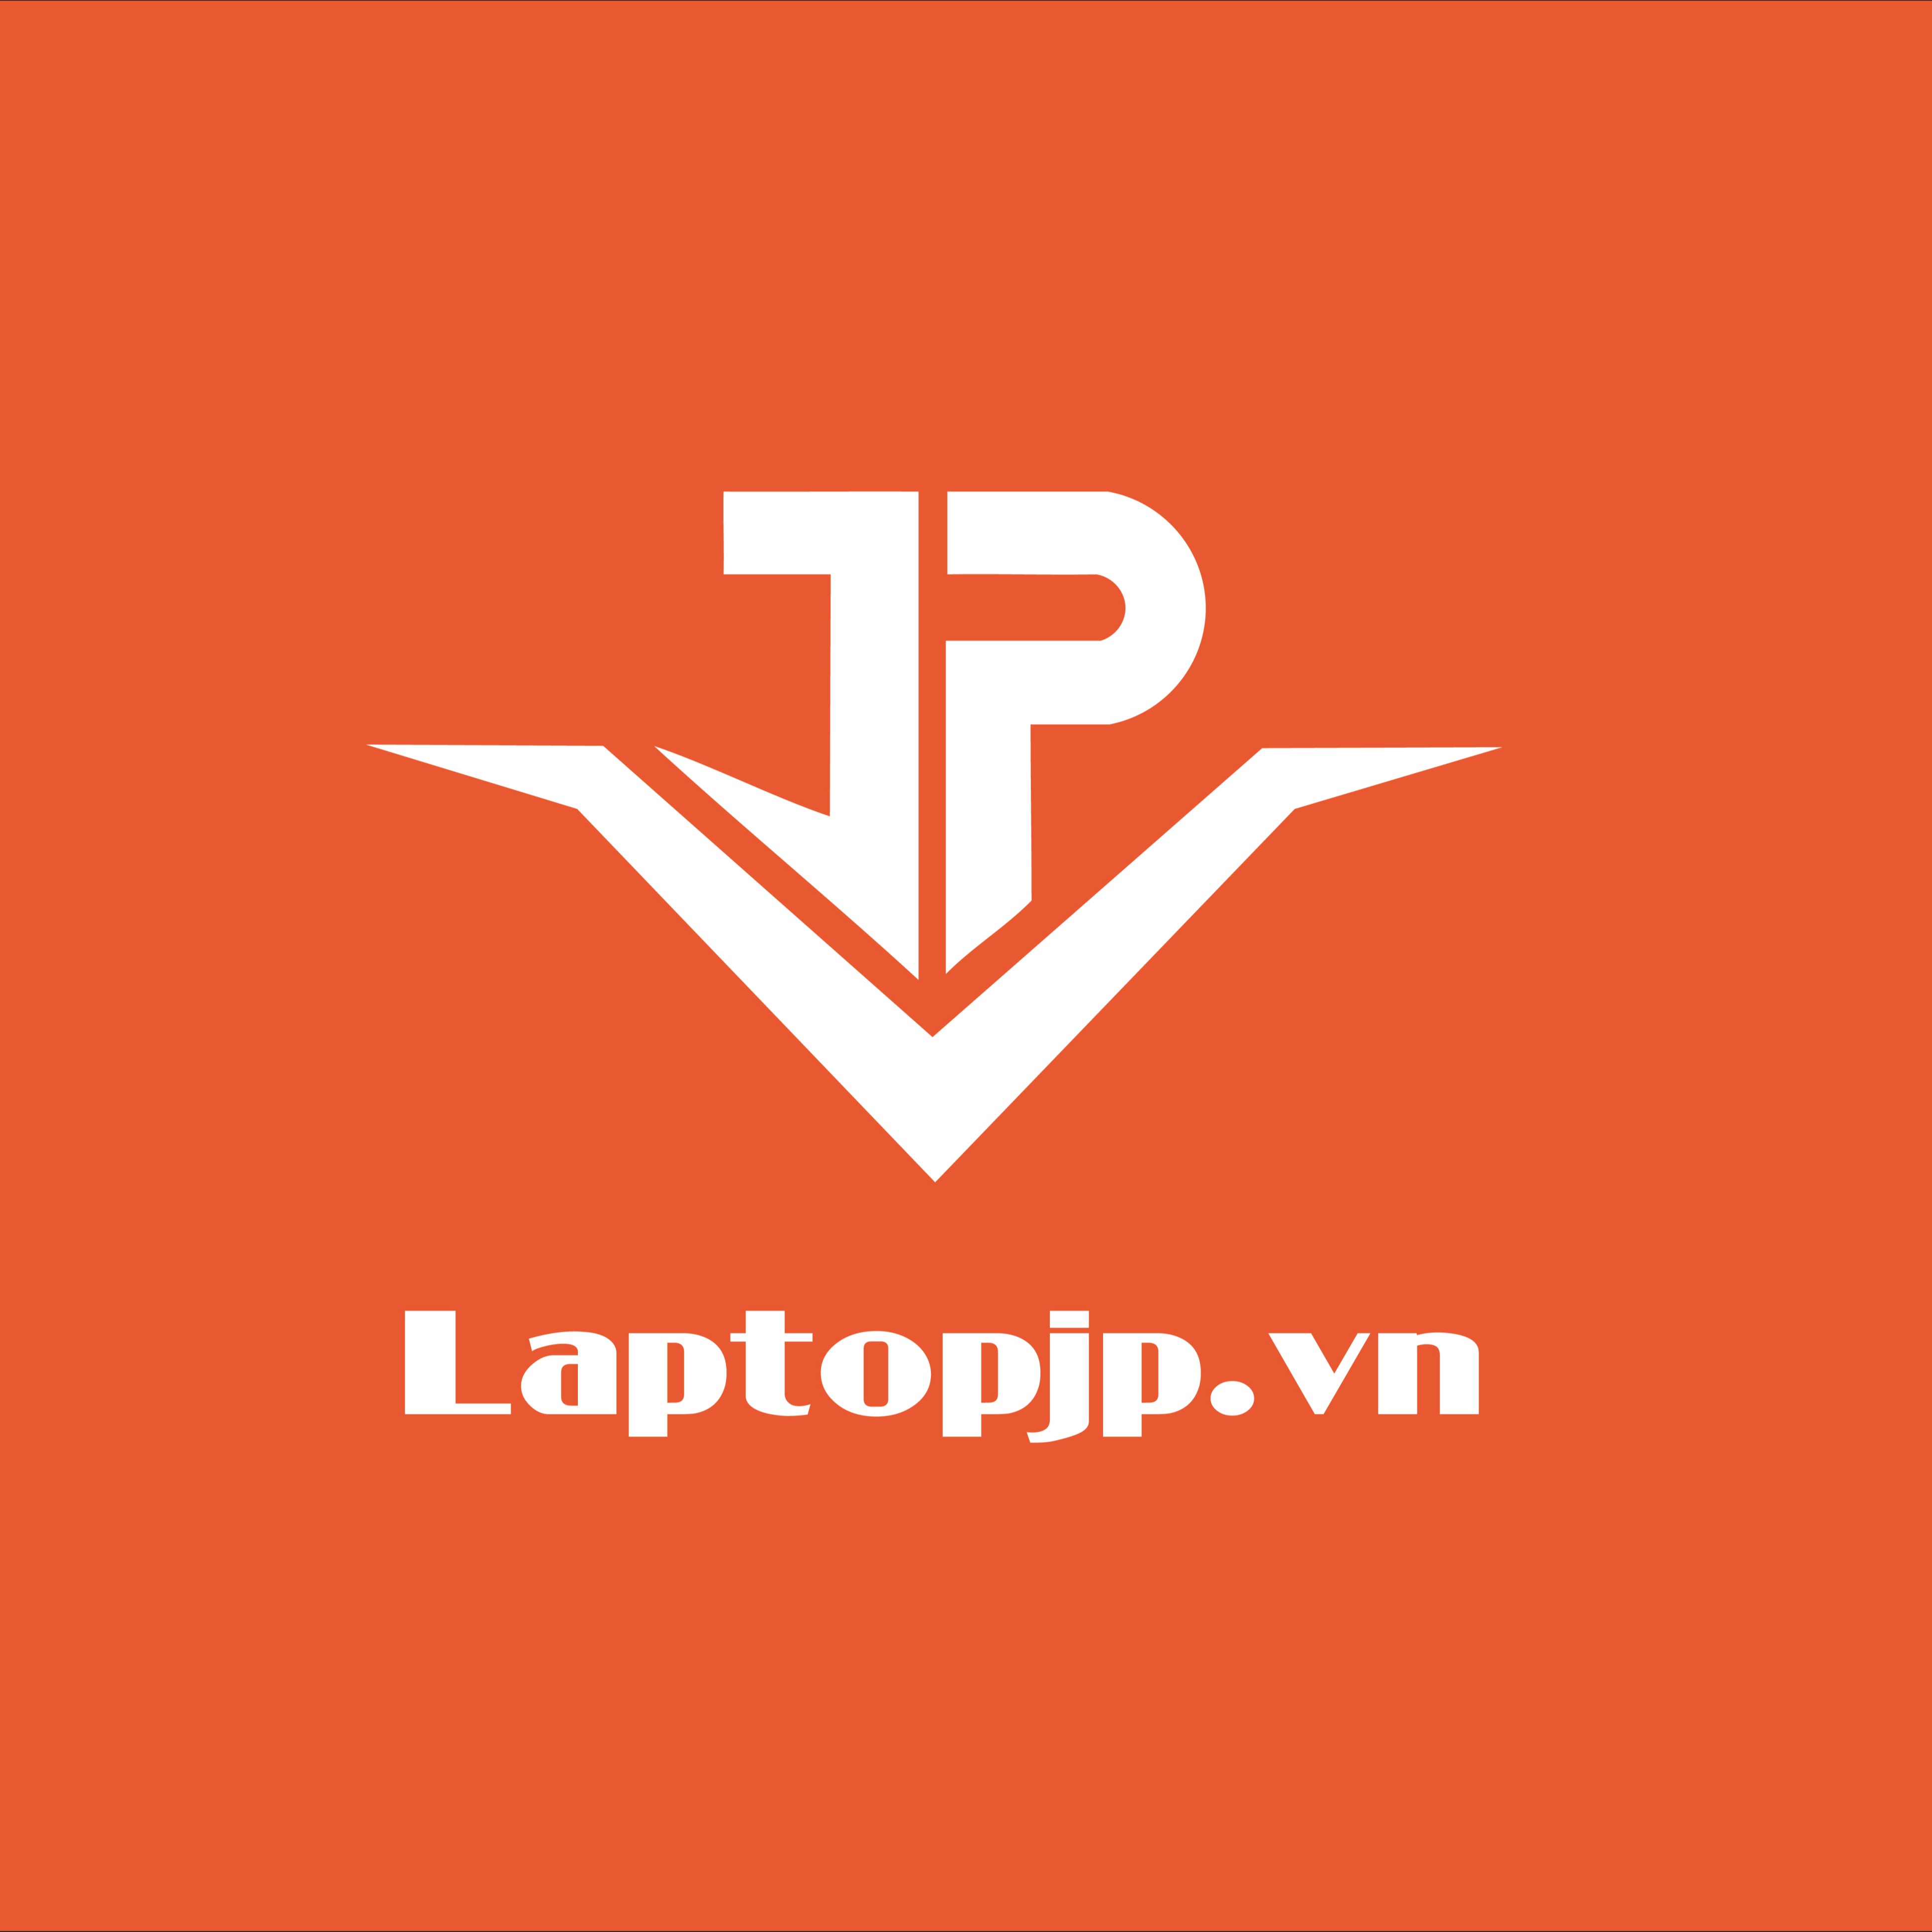 LaptopJP Chuyên Laptop Cũ